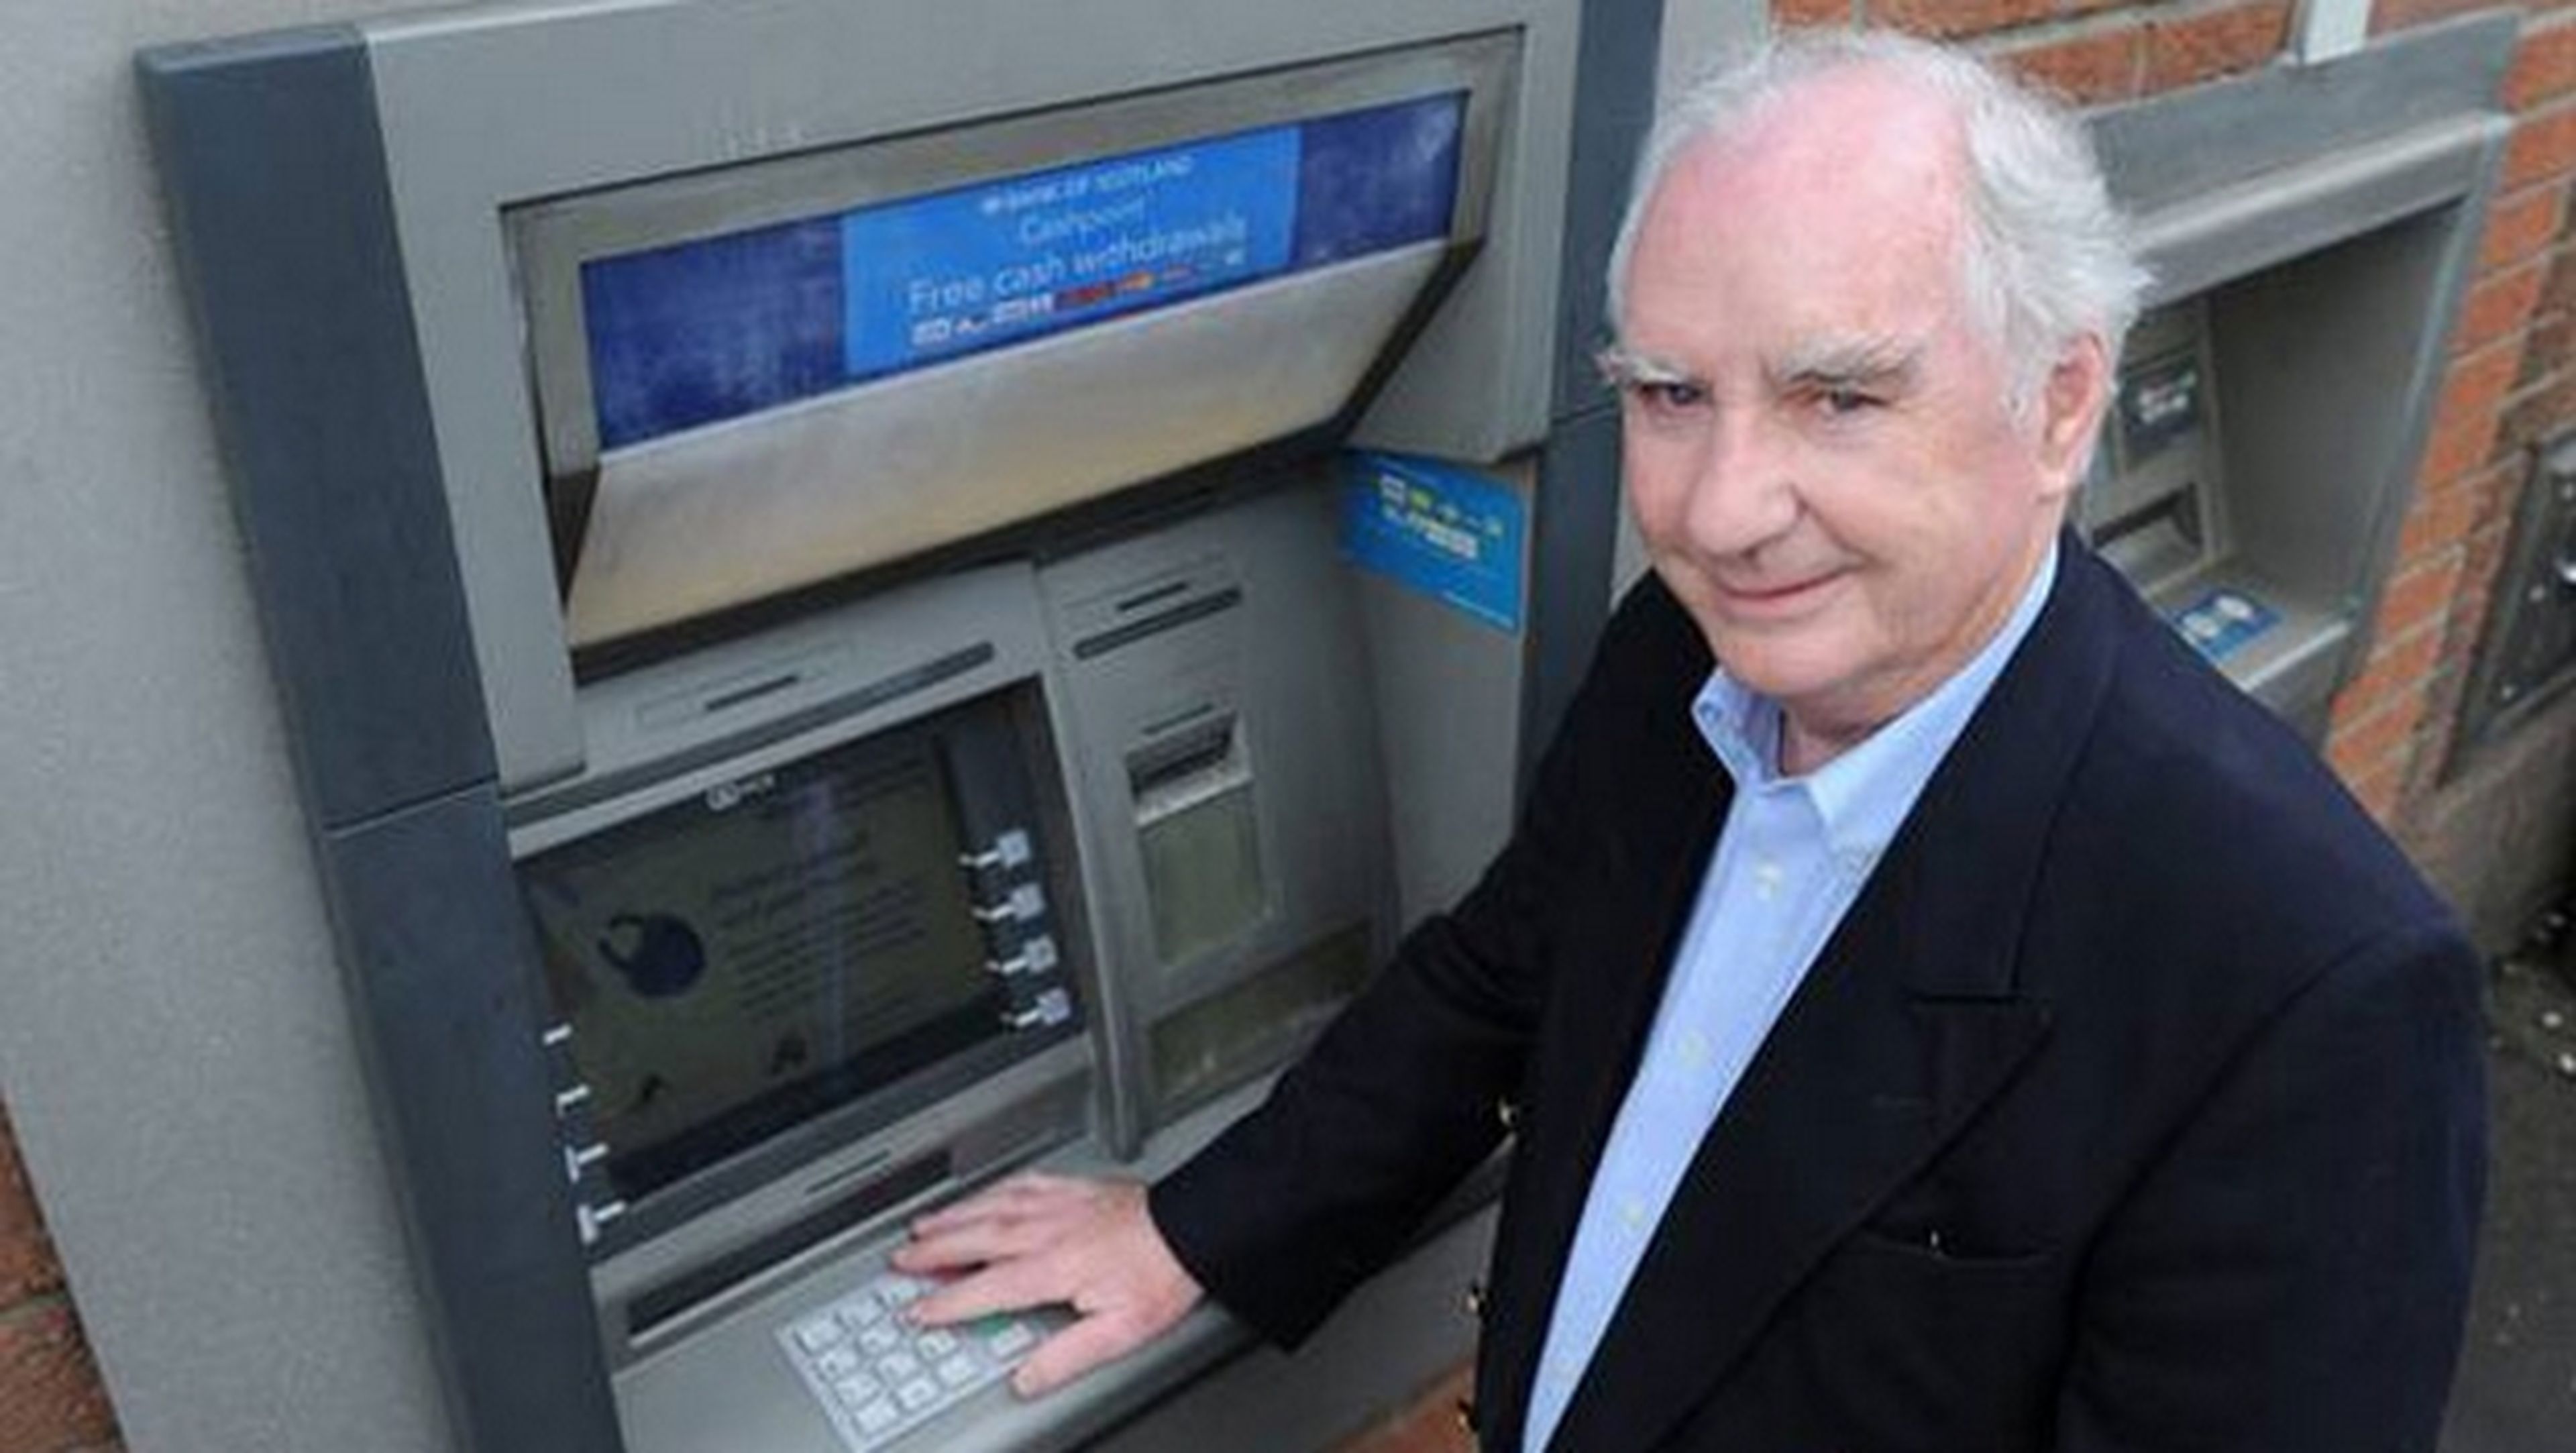 El cajero automático cumple 50 años, su inventor sólo ganó 12 euros